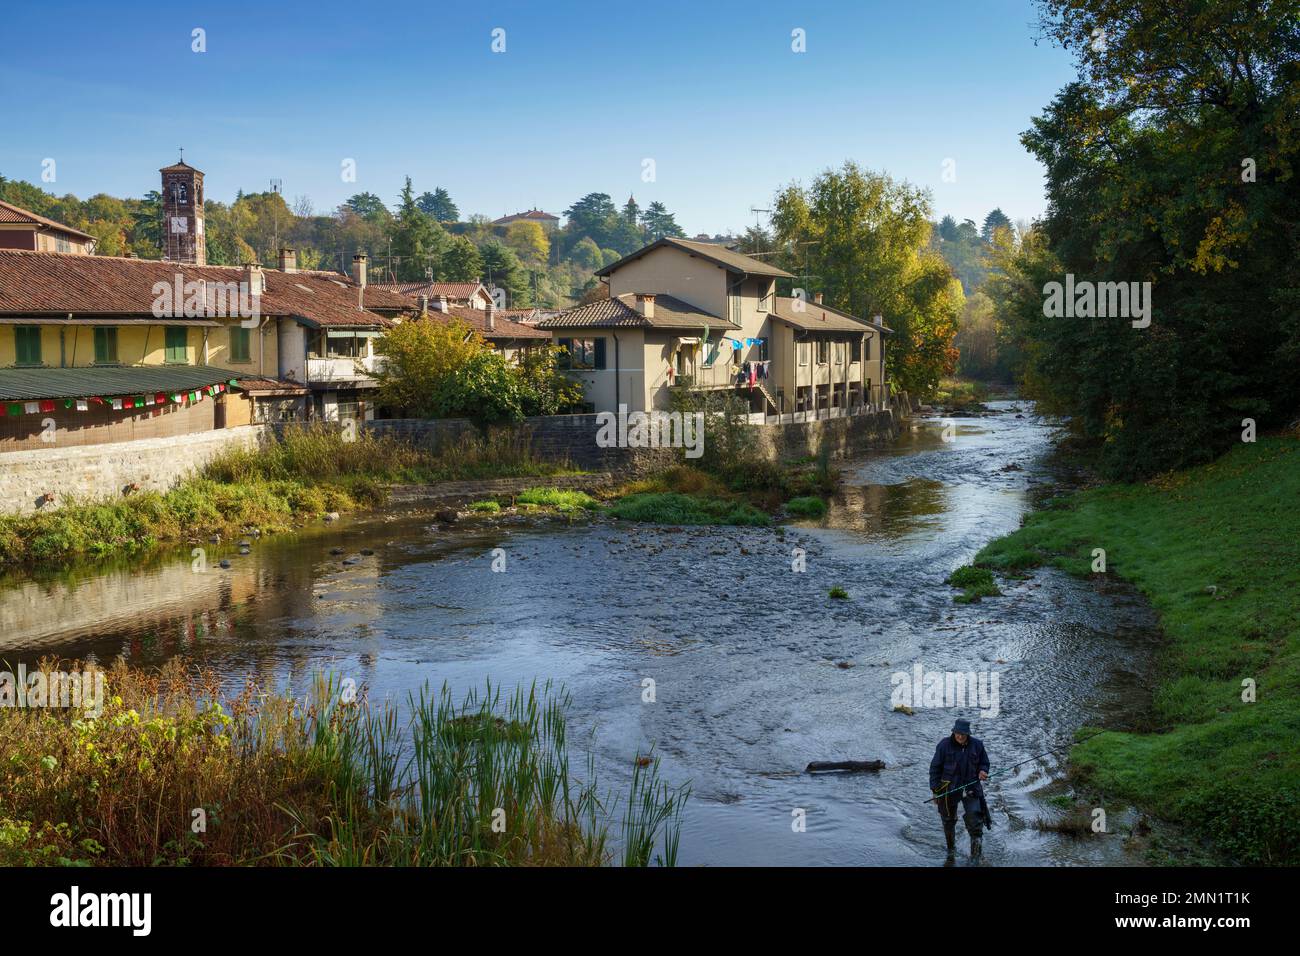 Agliate, old village in Brianza, Lombardy, Italy Stock Photo